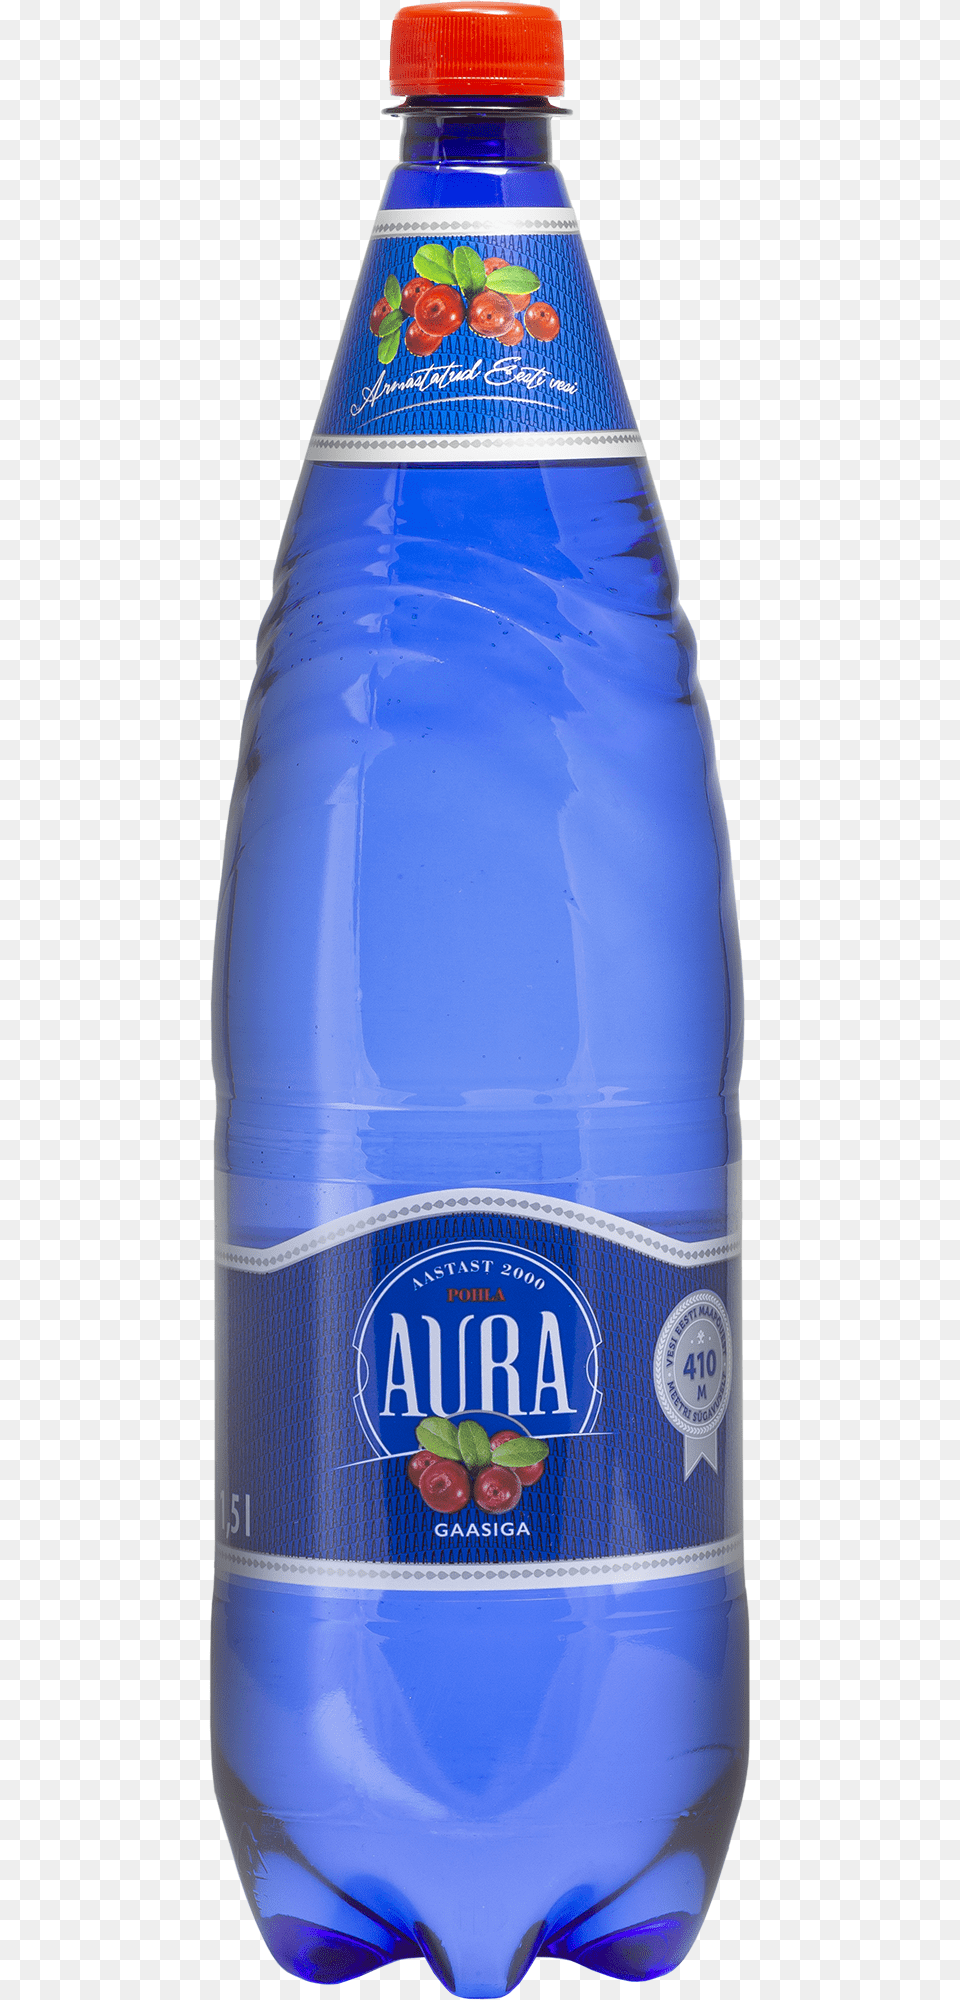 Blue Aura, Bottle, Water Bottle, Beverage, Mineral Water Free Transparent Png